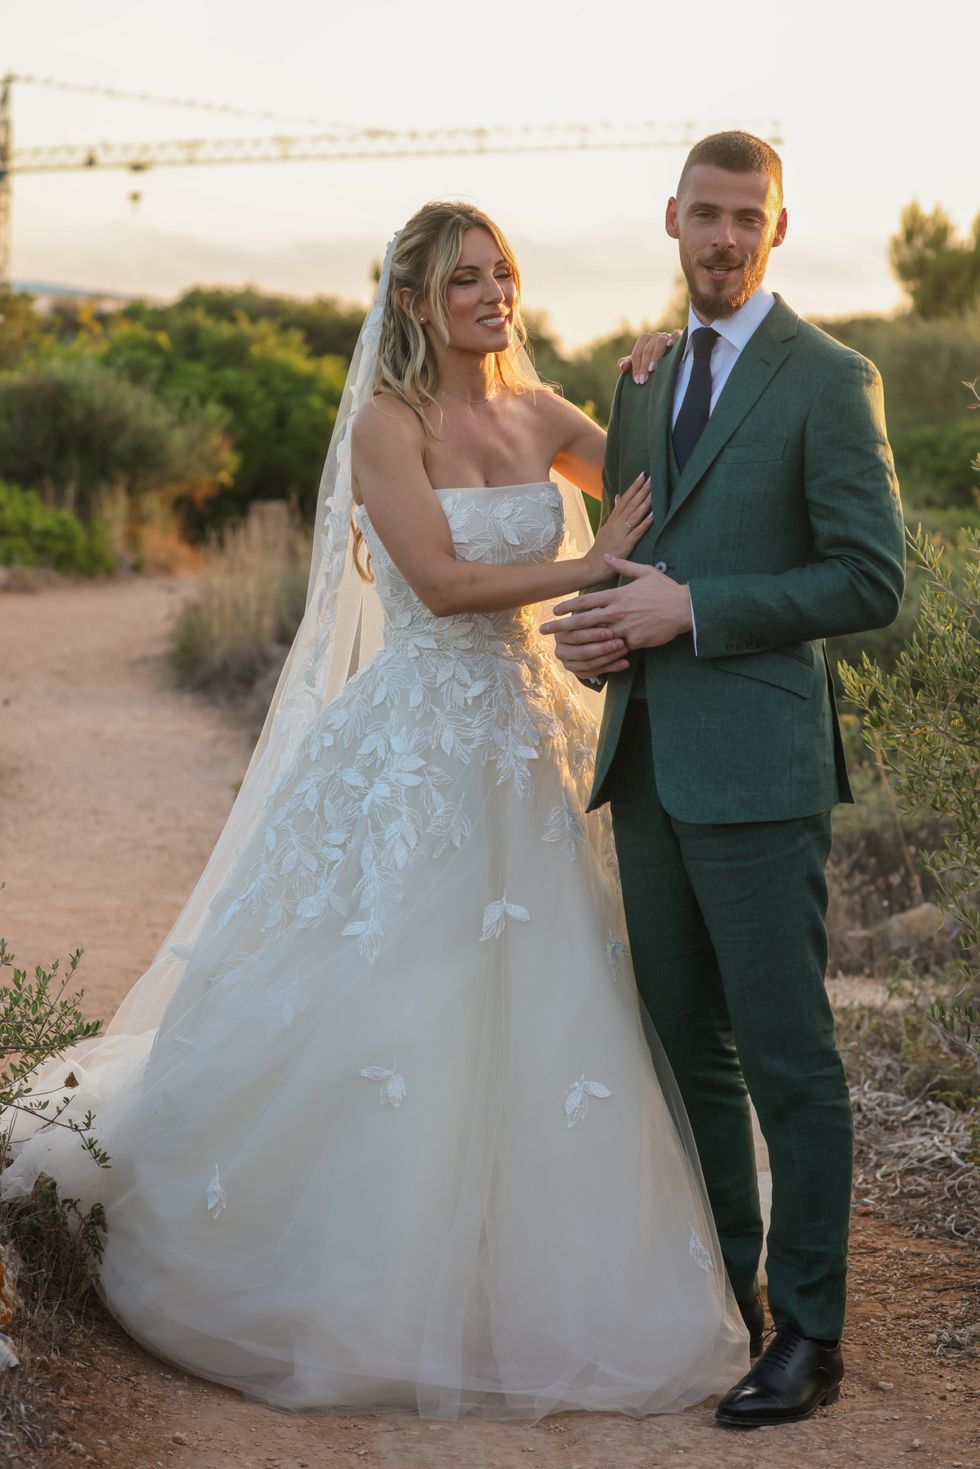 Edurne and David de Gea get married in Menorca